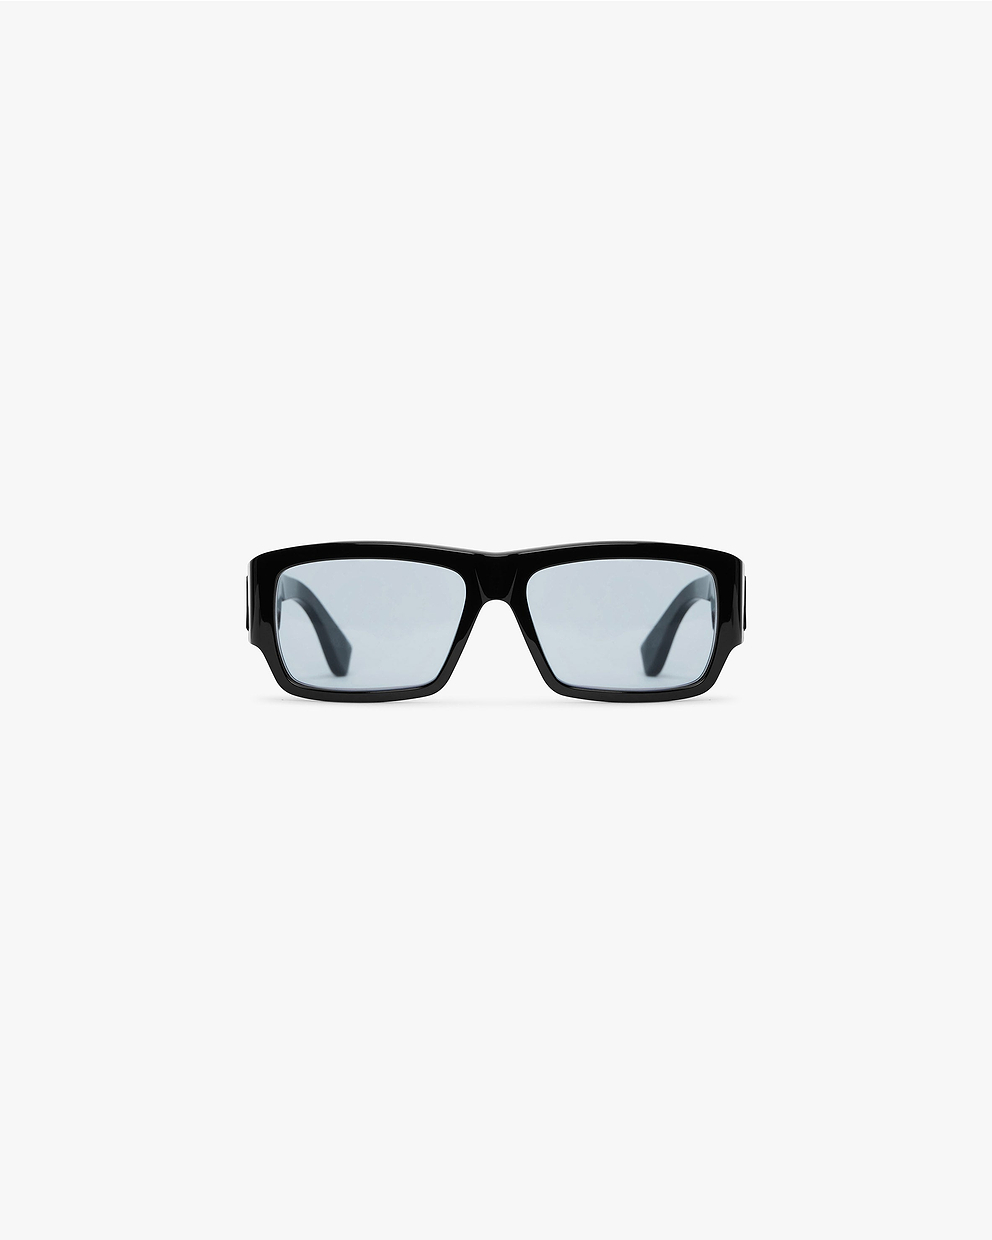 Slim Initial Sunglasses - Black | Represent Clo | One Size | Luxury Acetate Frames | Polarised Lenses